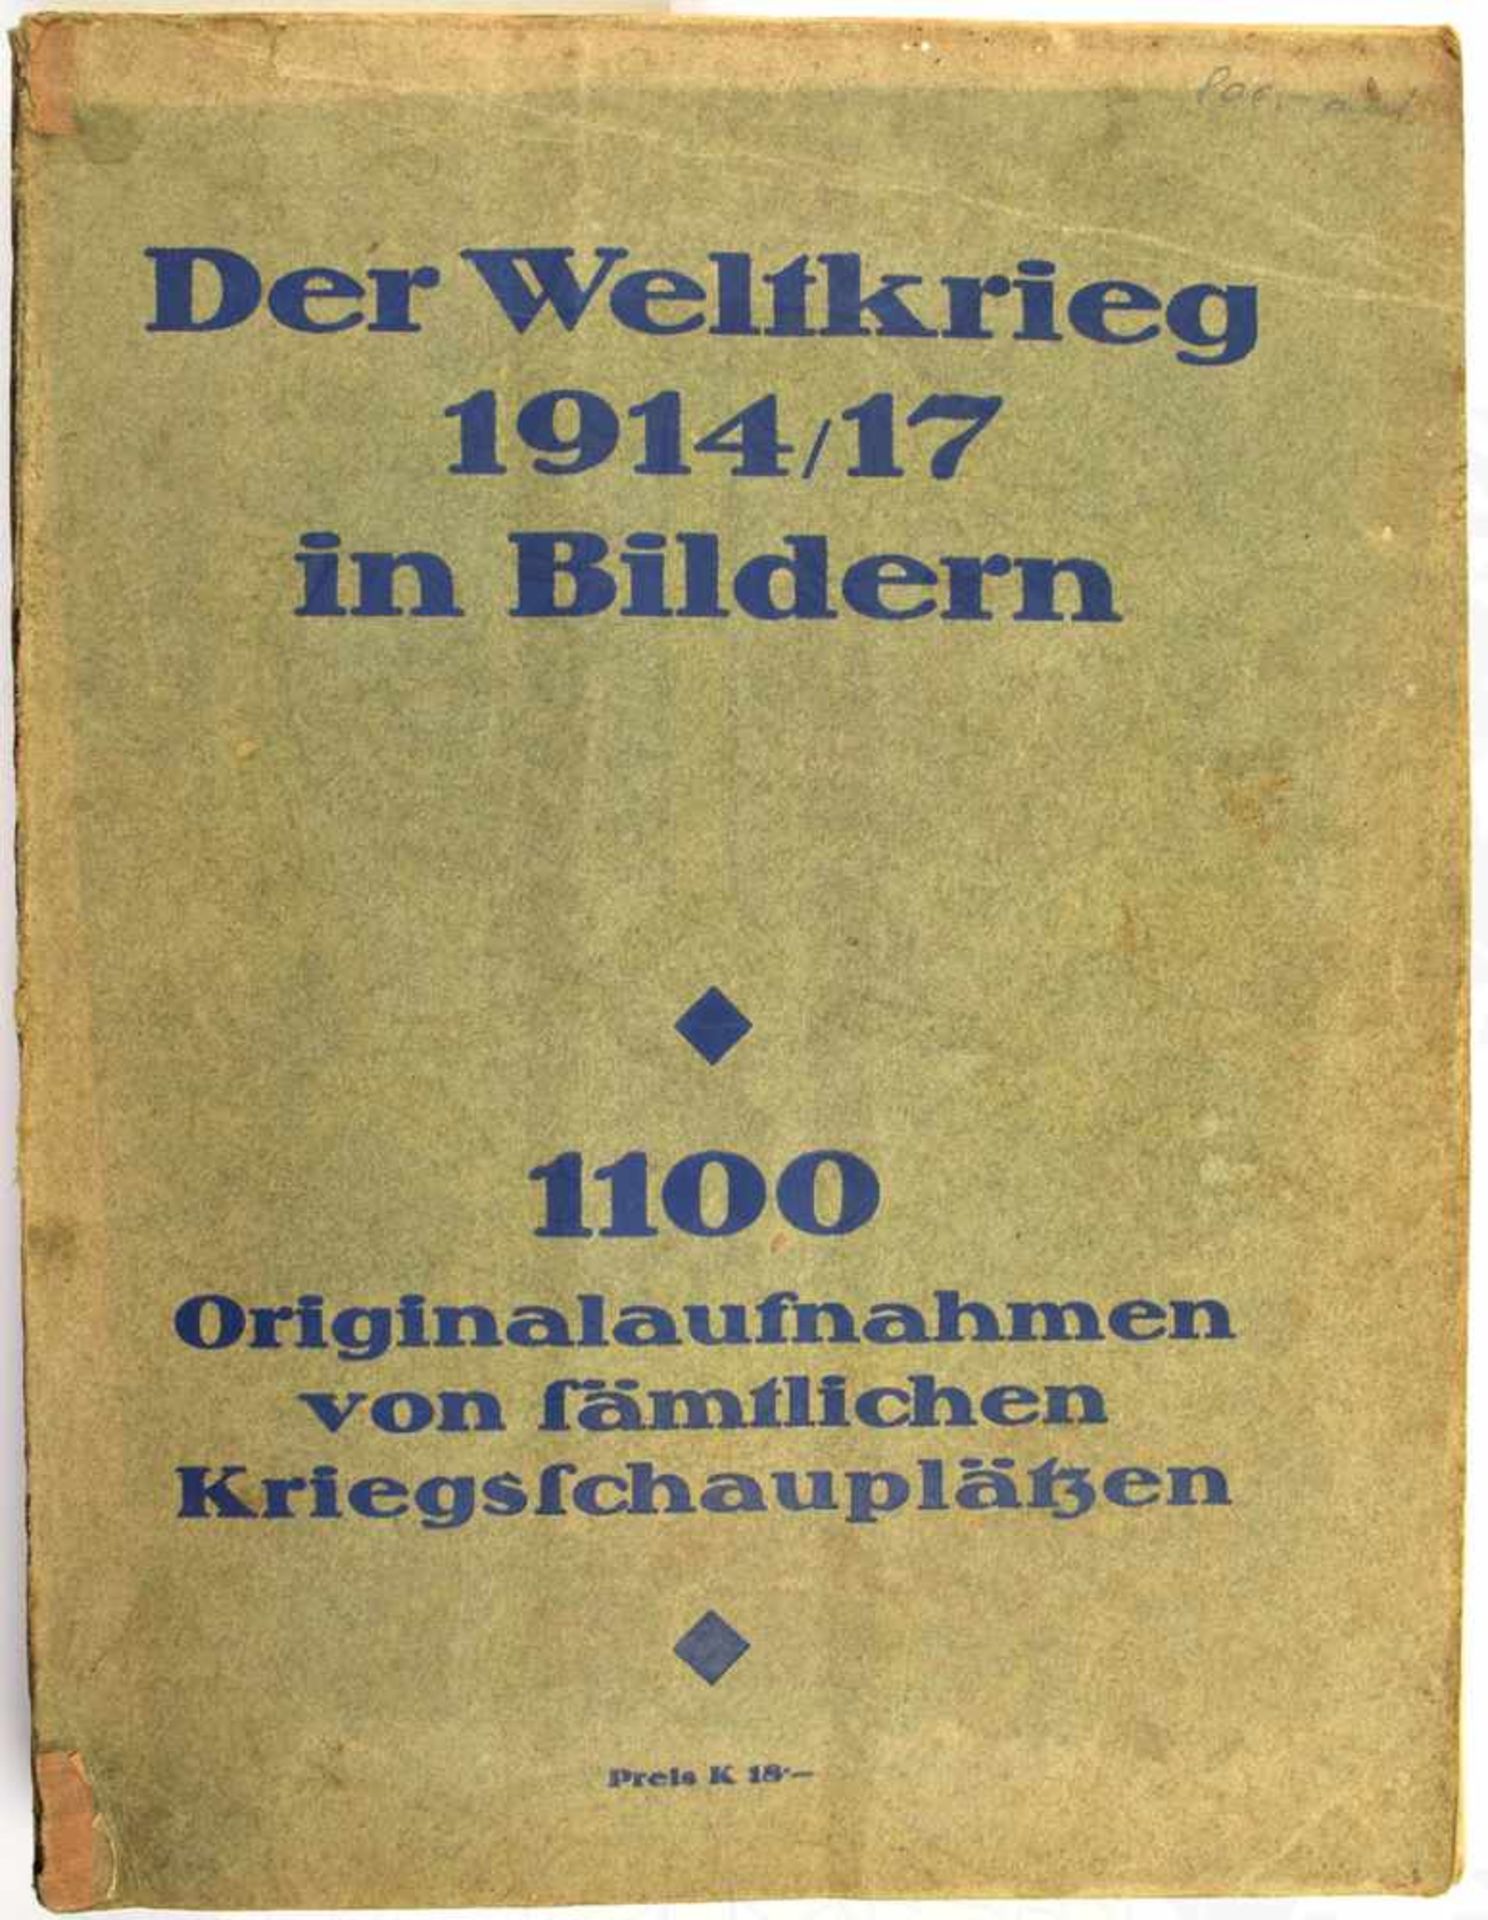 DER WELTKRIEG 1914/17 IN BILDERN, „1100 Originalaufnahmen...“, Verlag Seidel & Sohn, Wien 1917,